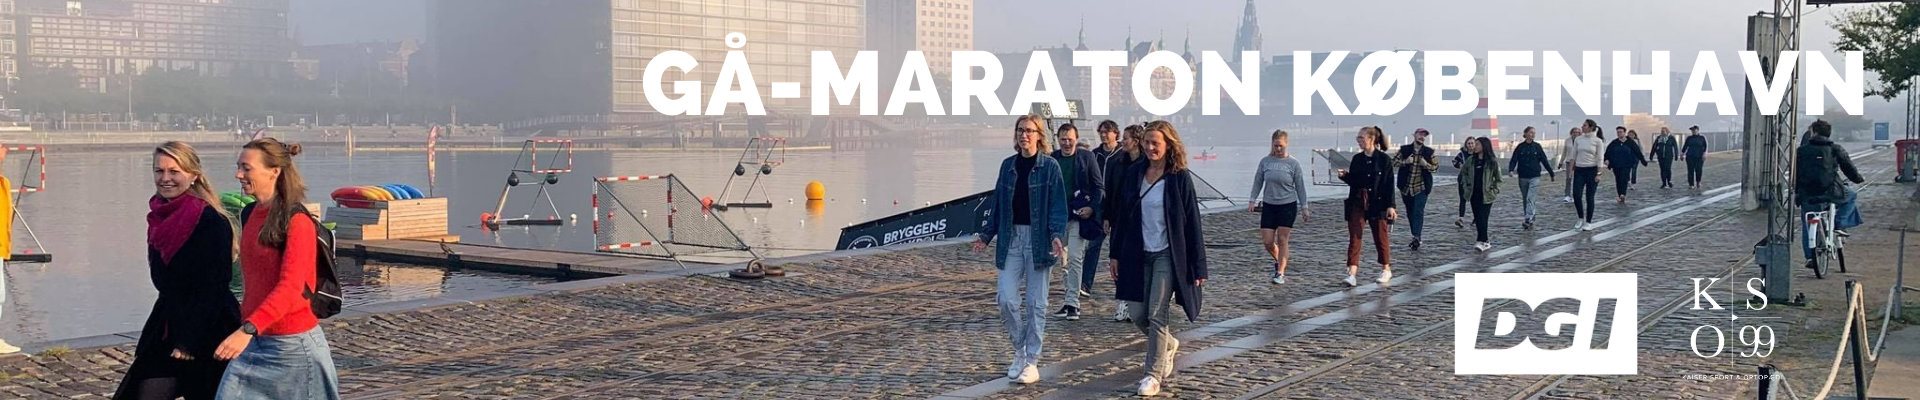 Gå-maraton København 2020